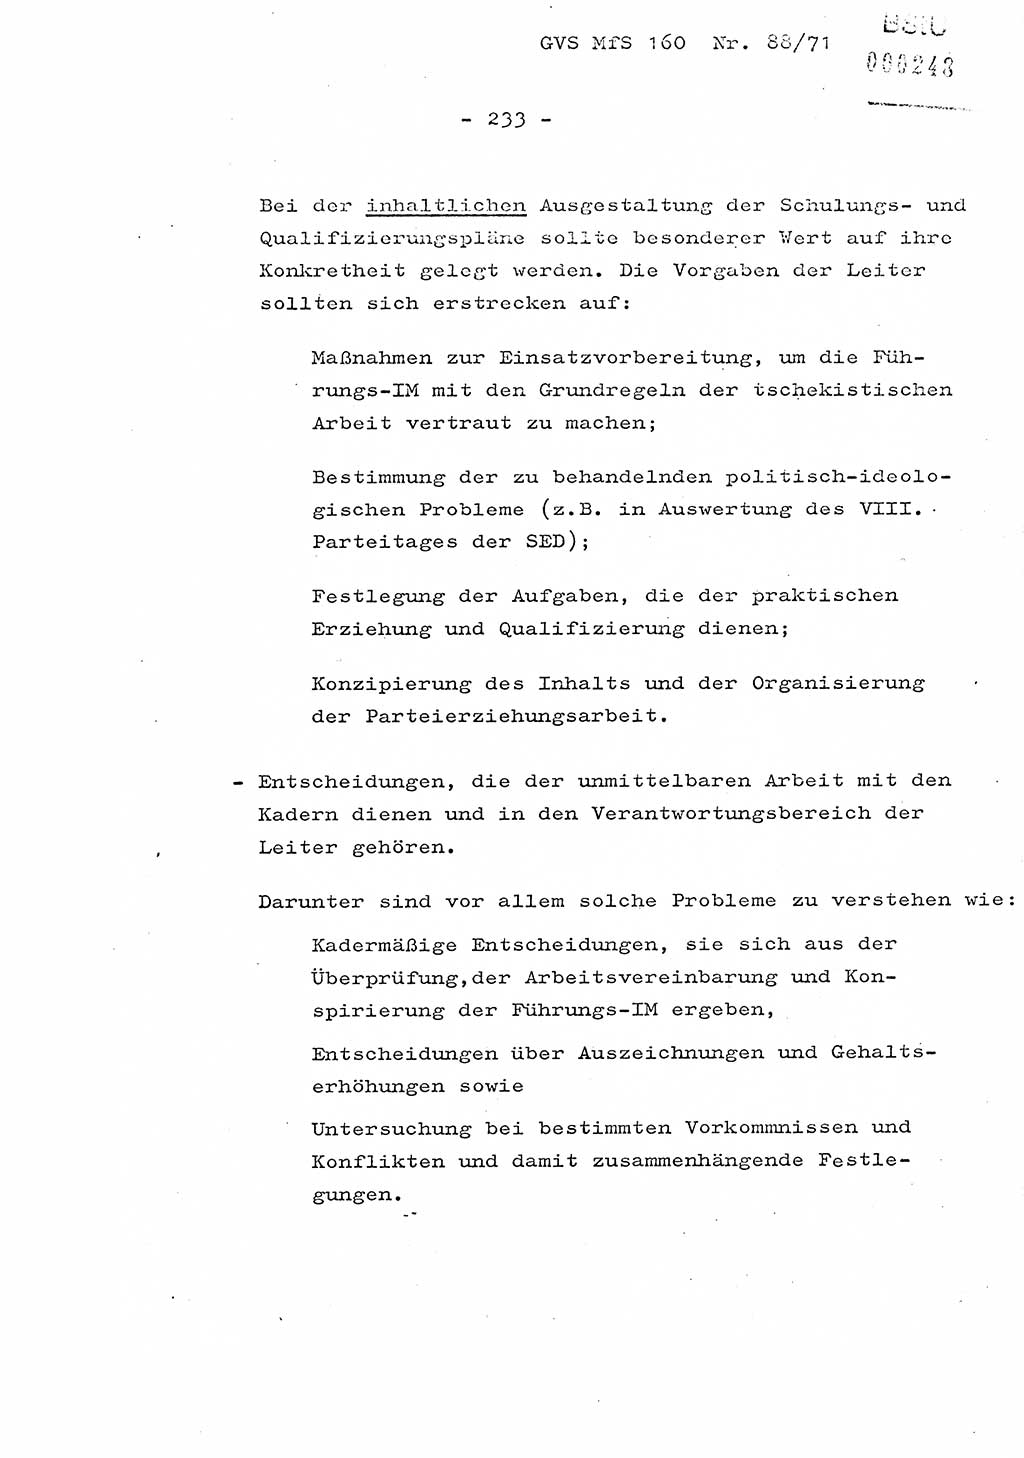 Dissertation Oberstleutnant Josef Schwarz (BV Schwerin), Major Fritz Amm (JHS), Hauptmann Peter Gräßler (JHS), Ministerium für Staatssicherheit (MfS) [Deutsche Demokratische Republik (DDR)], Juristische Hochschule (JHS), Geheime Verschlußsache (GVS) 160-88/71, Potsdam 1972, Seite 233 (Diss. MfS DDR JHS GVS 160-88/71 1972, S. 233)